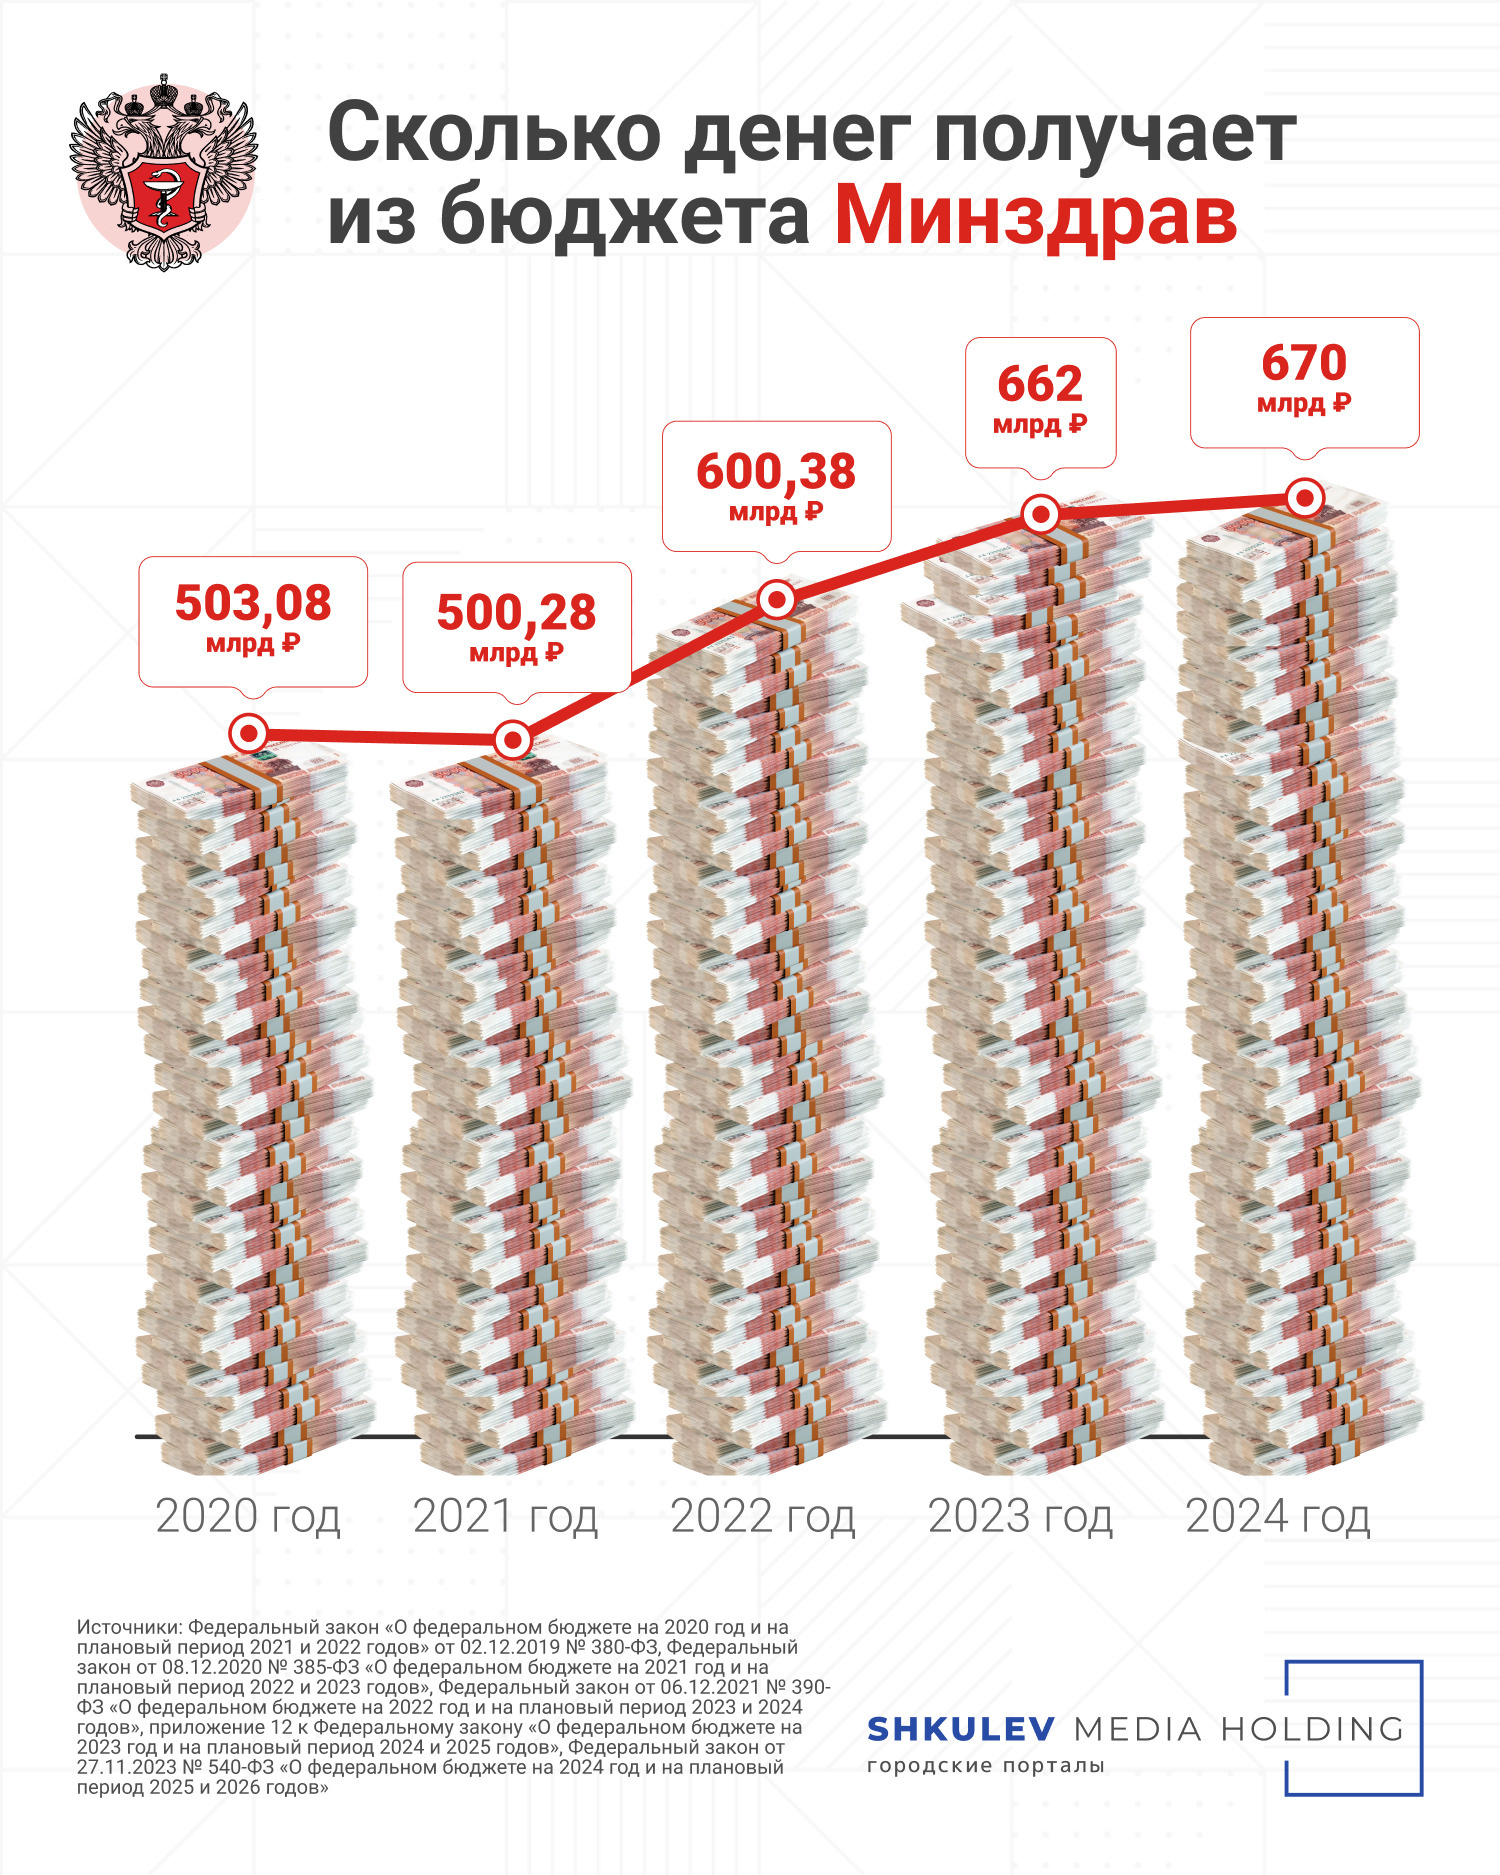 Минздрав получит 670 млрд рублей, но еще почти 4 триллиона достанется Фонду ОМС